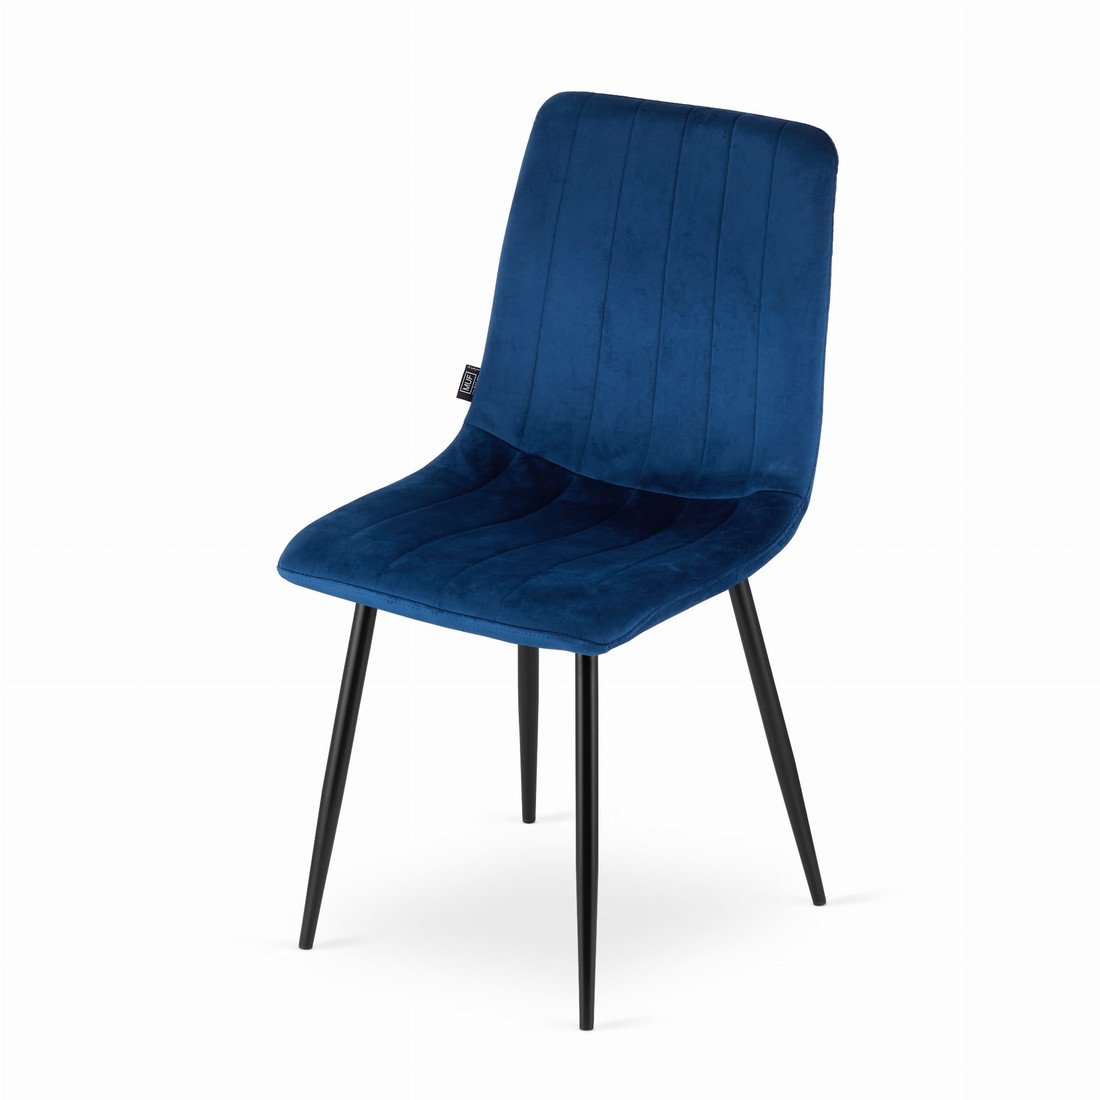 Modrá sametová židle LAVA s černými nohami